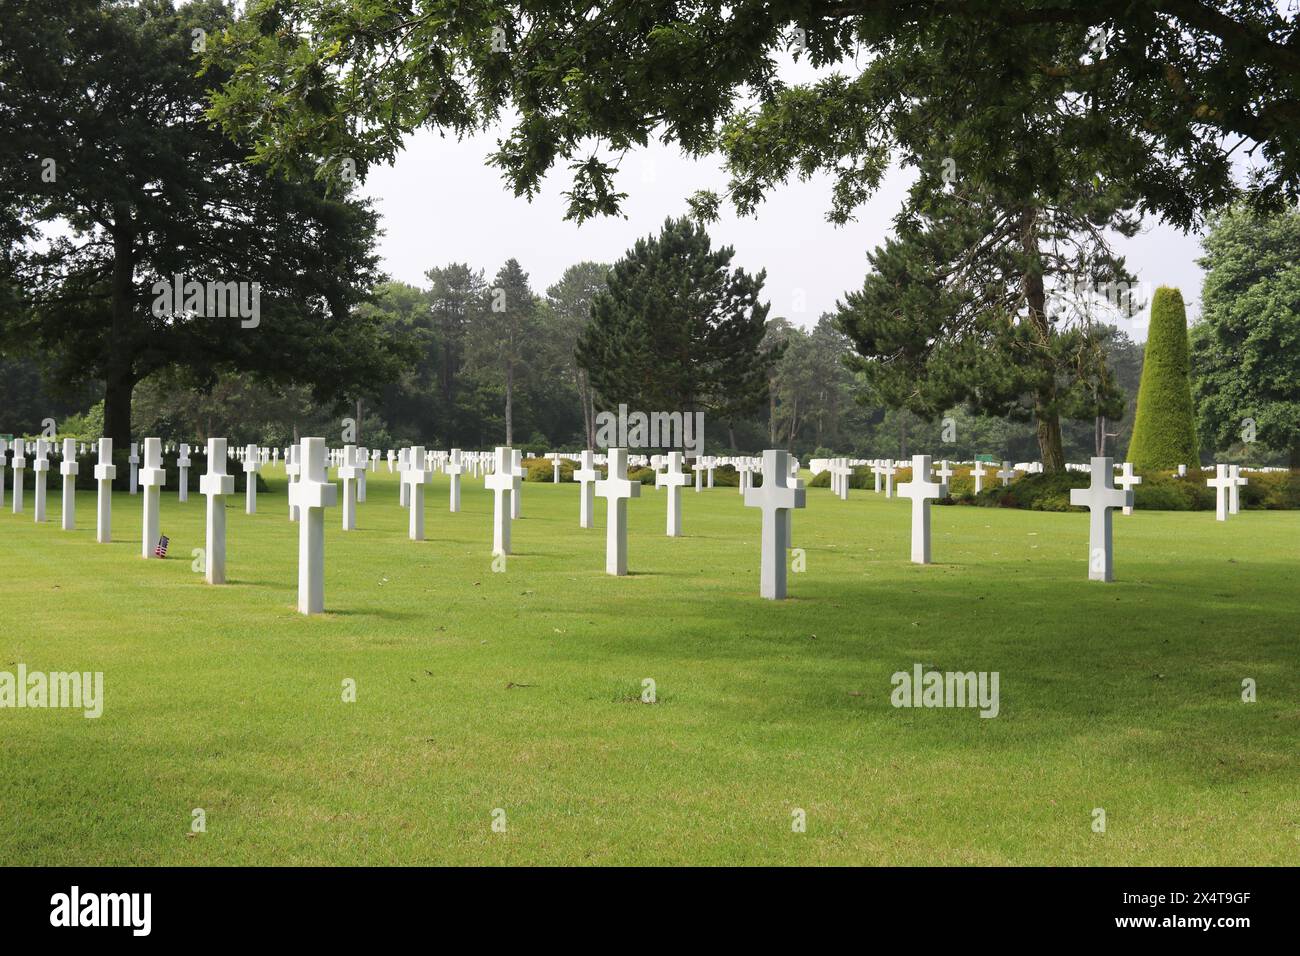 Linien von weißen Marmorkreuzen auf grünem Gras auf dem Kriegsfriedhof. Umliegende Wälder und keine sichtbaren Menschen. Stockfoto